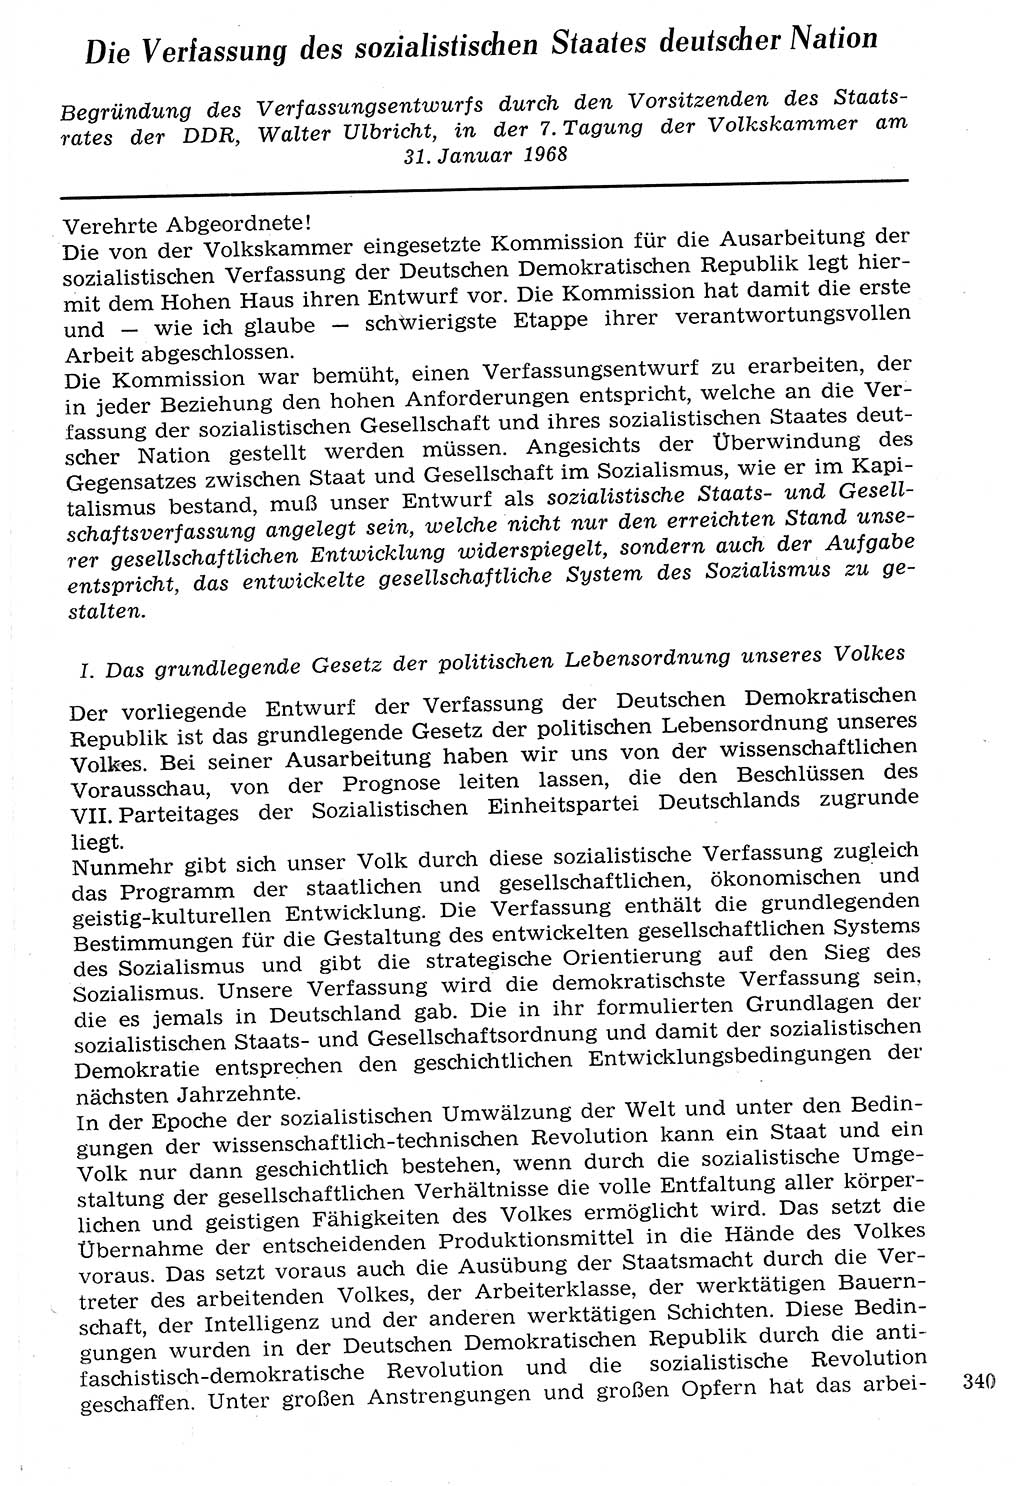 Staat und Recht (StuR), 17. Jahrgang [Deutsche Demokratische Republik (DDR)] 1968, Seite 340 (StuR DDR 1968, S. 340)